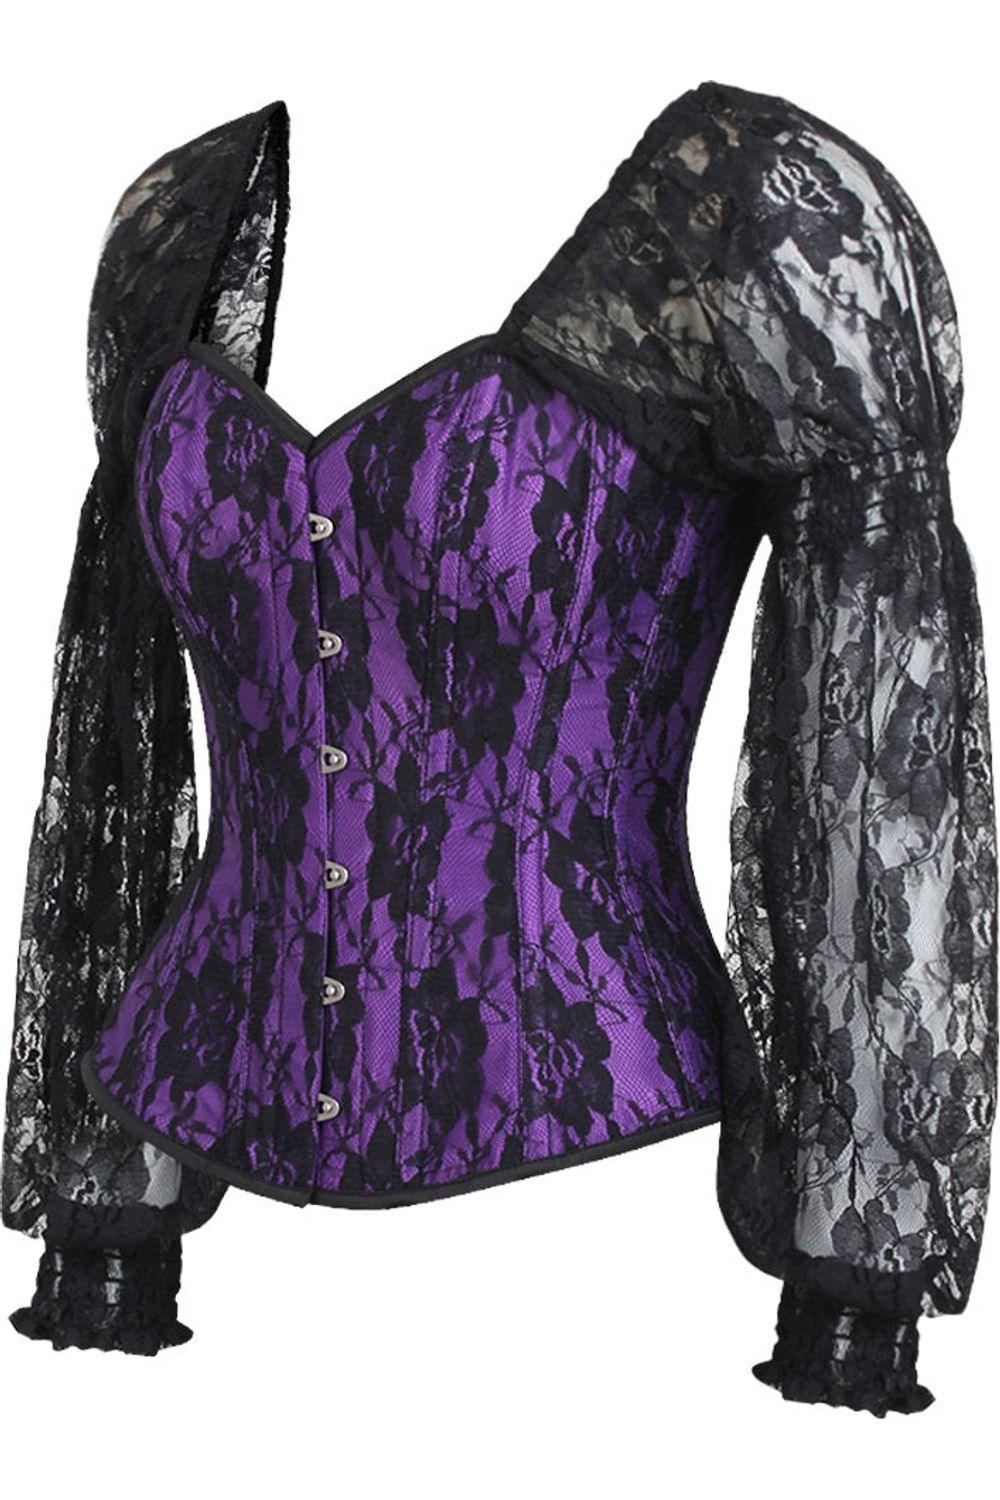 Top Drawer Purple w/Black Lace Steel Boned Long Sleeve Corset - AMIClubwear